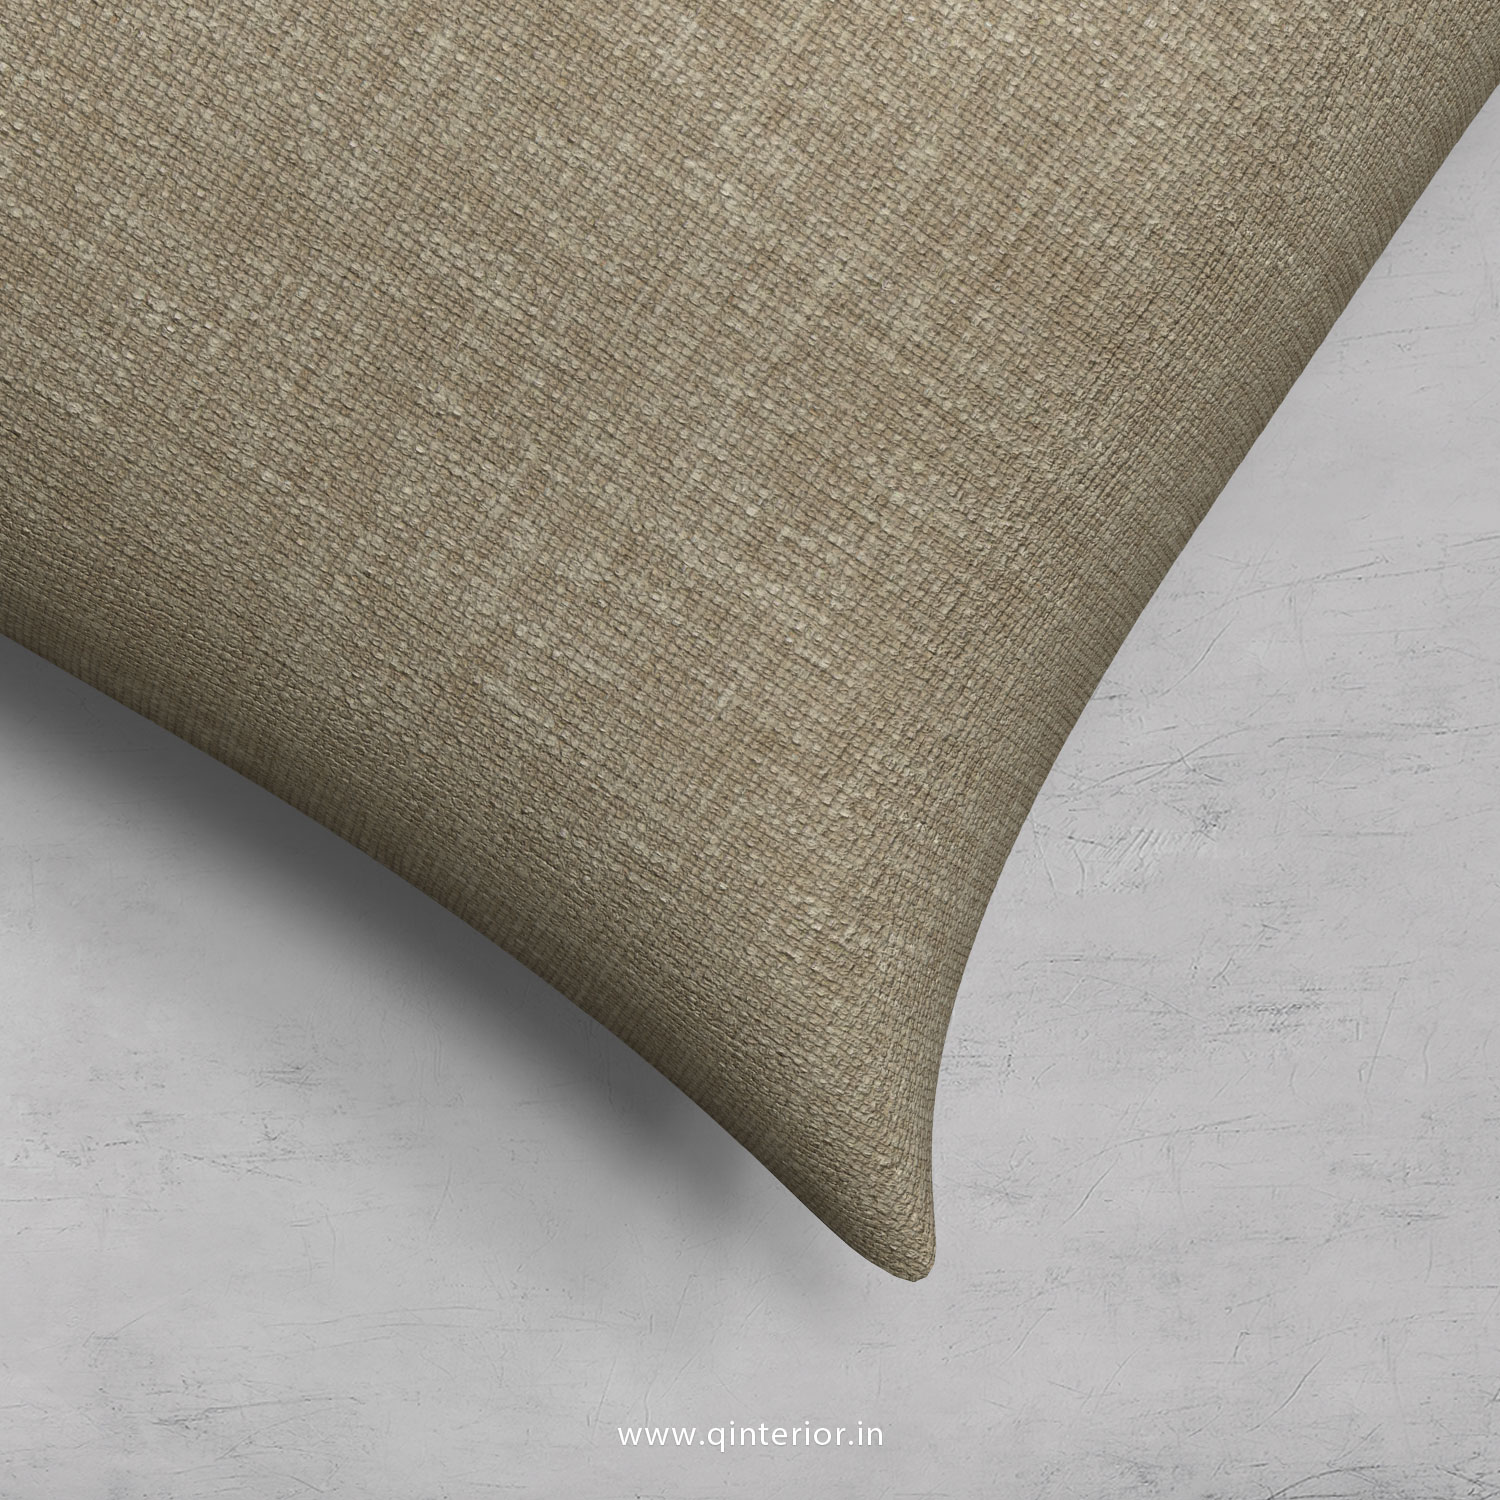 Cushion With Cushion Cover in Cotton Plain- CUS002 CP05